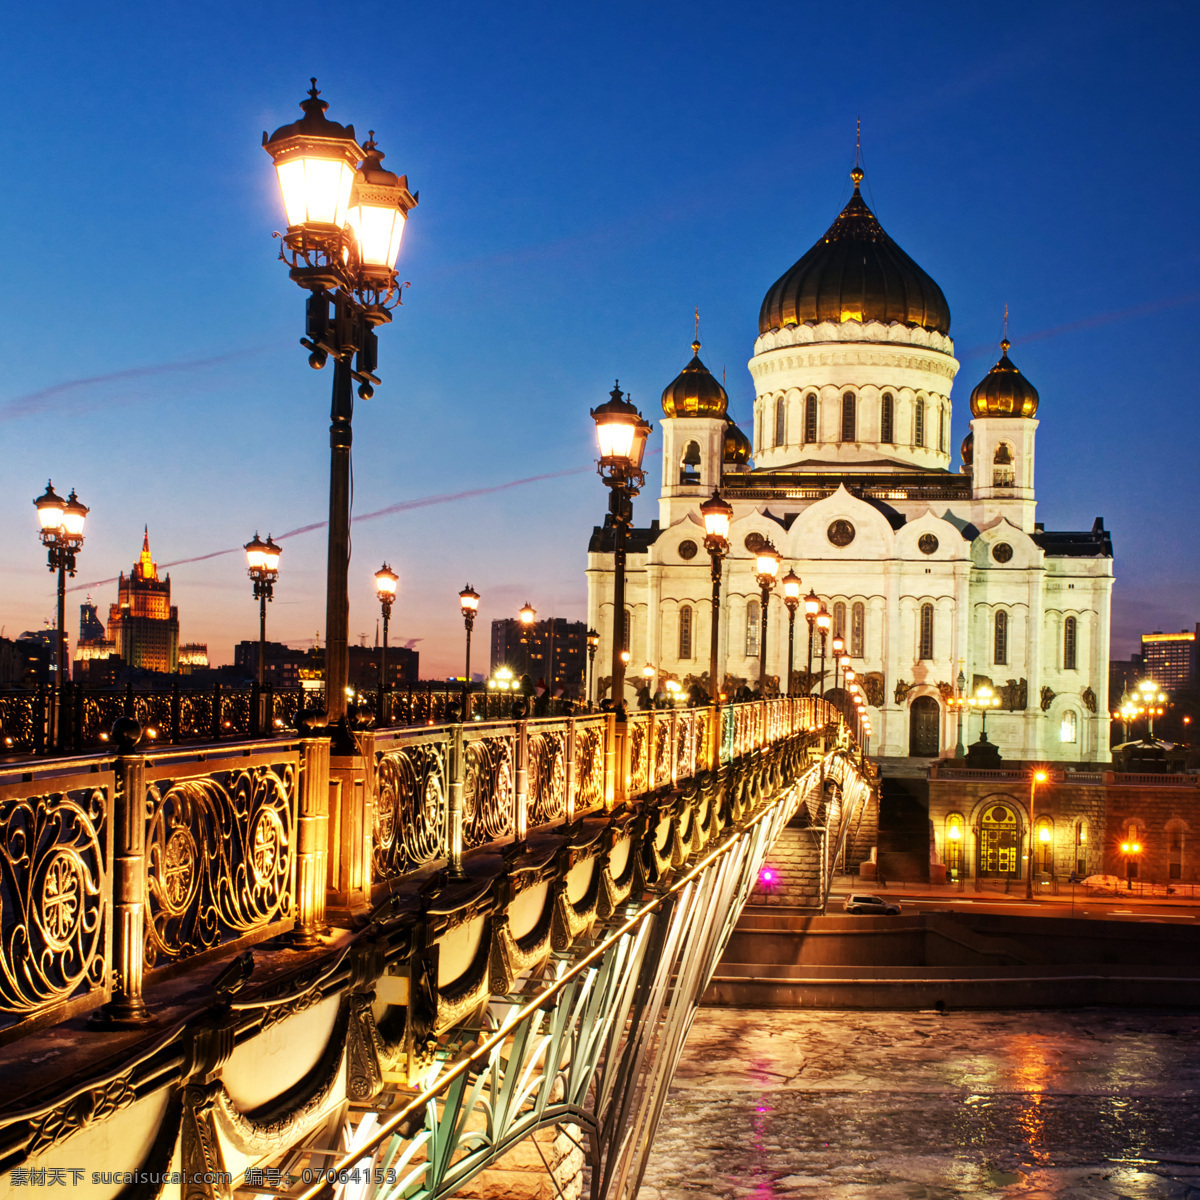 俄罗斯莫斯科 俄罗斯 莫斯科 城市摄影 国外旅游 建筑摄影 夜景 灯光 联邦共和国 国外摄影 旅游摄影 黑色